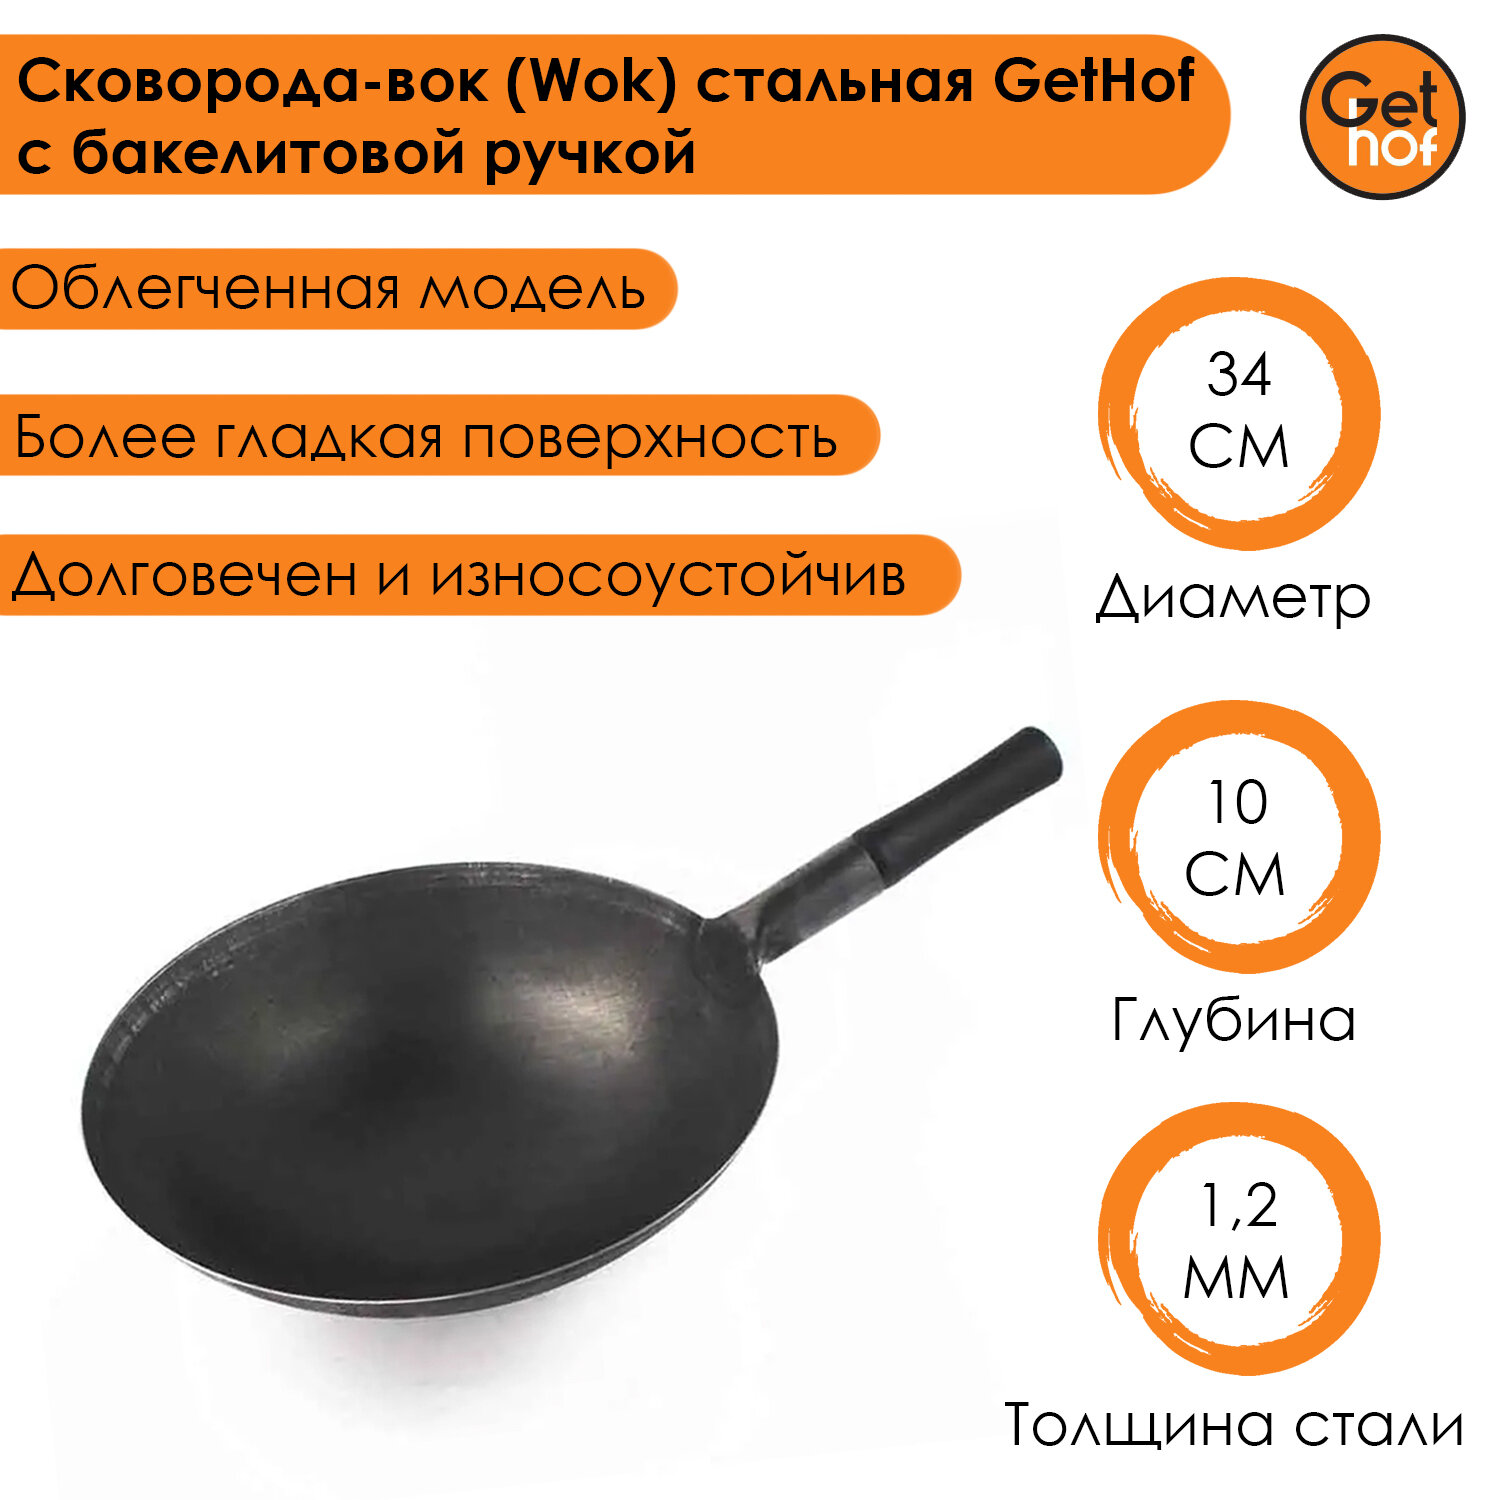 Сковорода-вок (Wok) стальная GetHof BlackBakelit 34 см